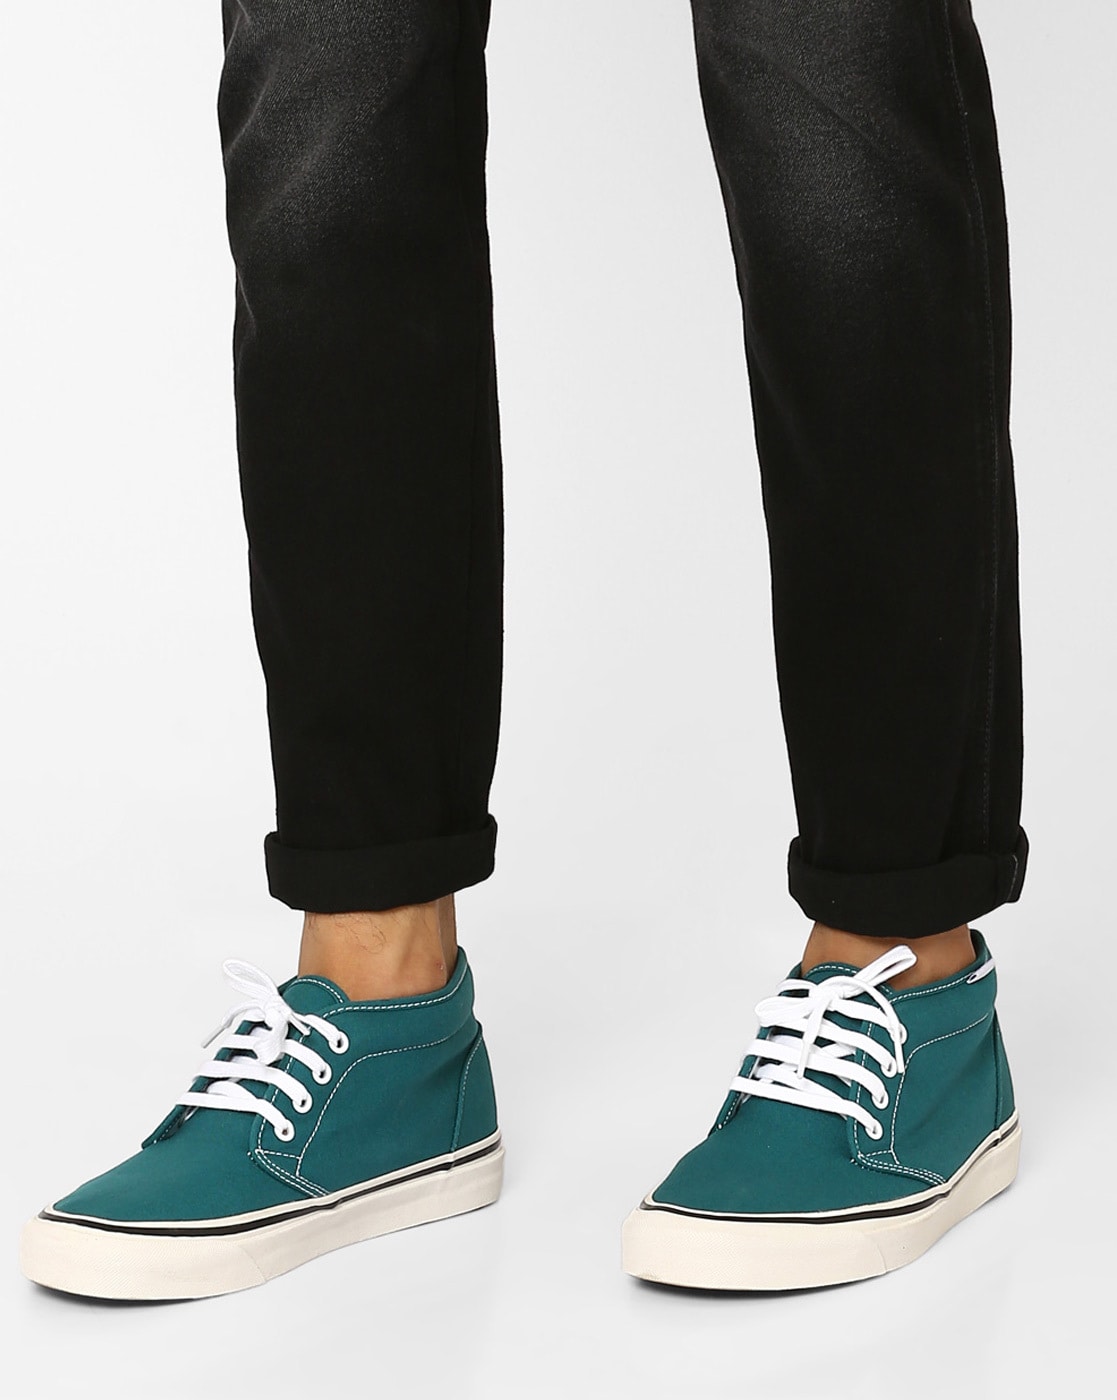 Buy Teal Green Sneakers for Men by Vans 